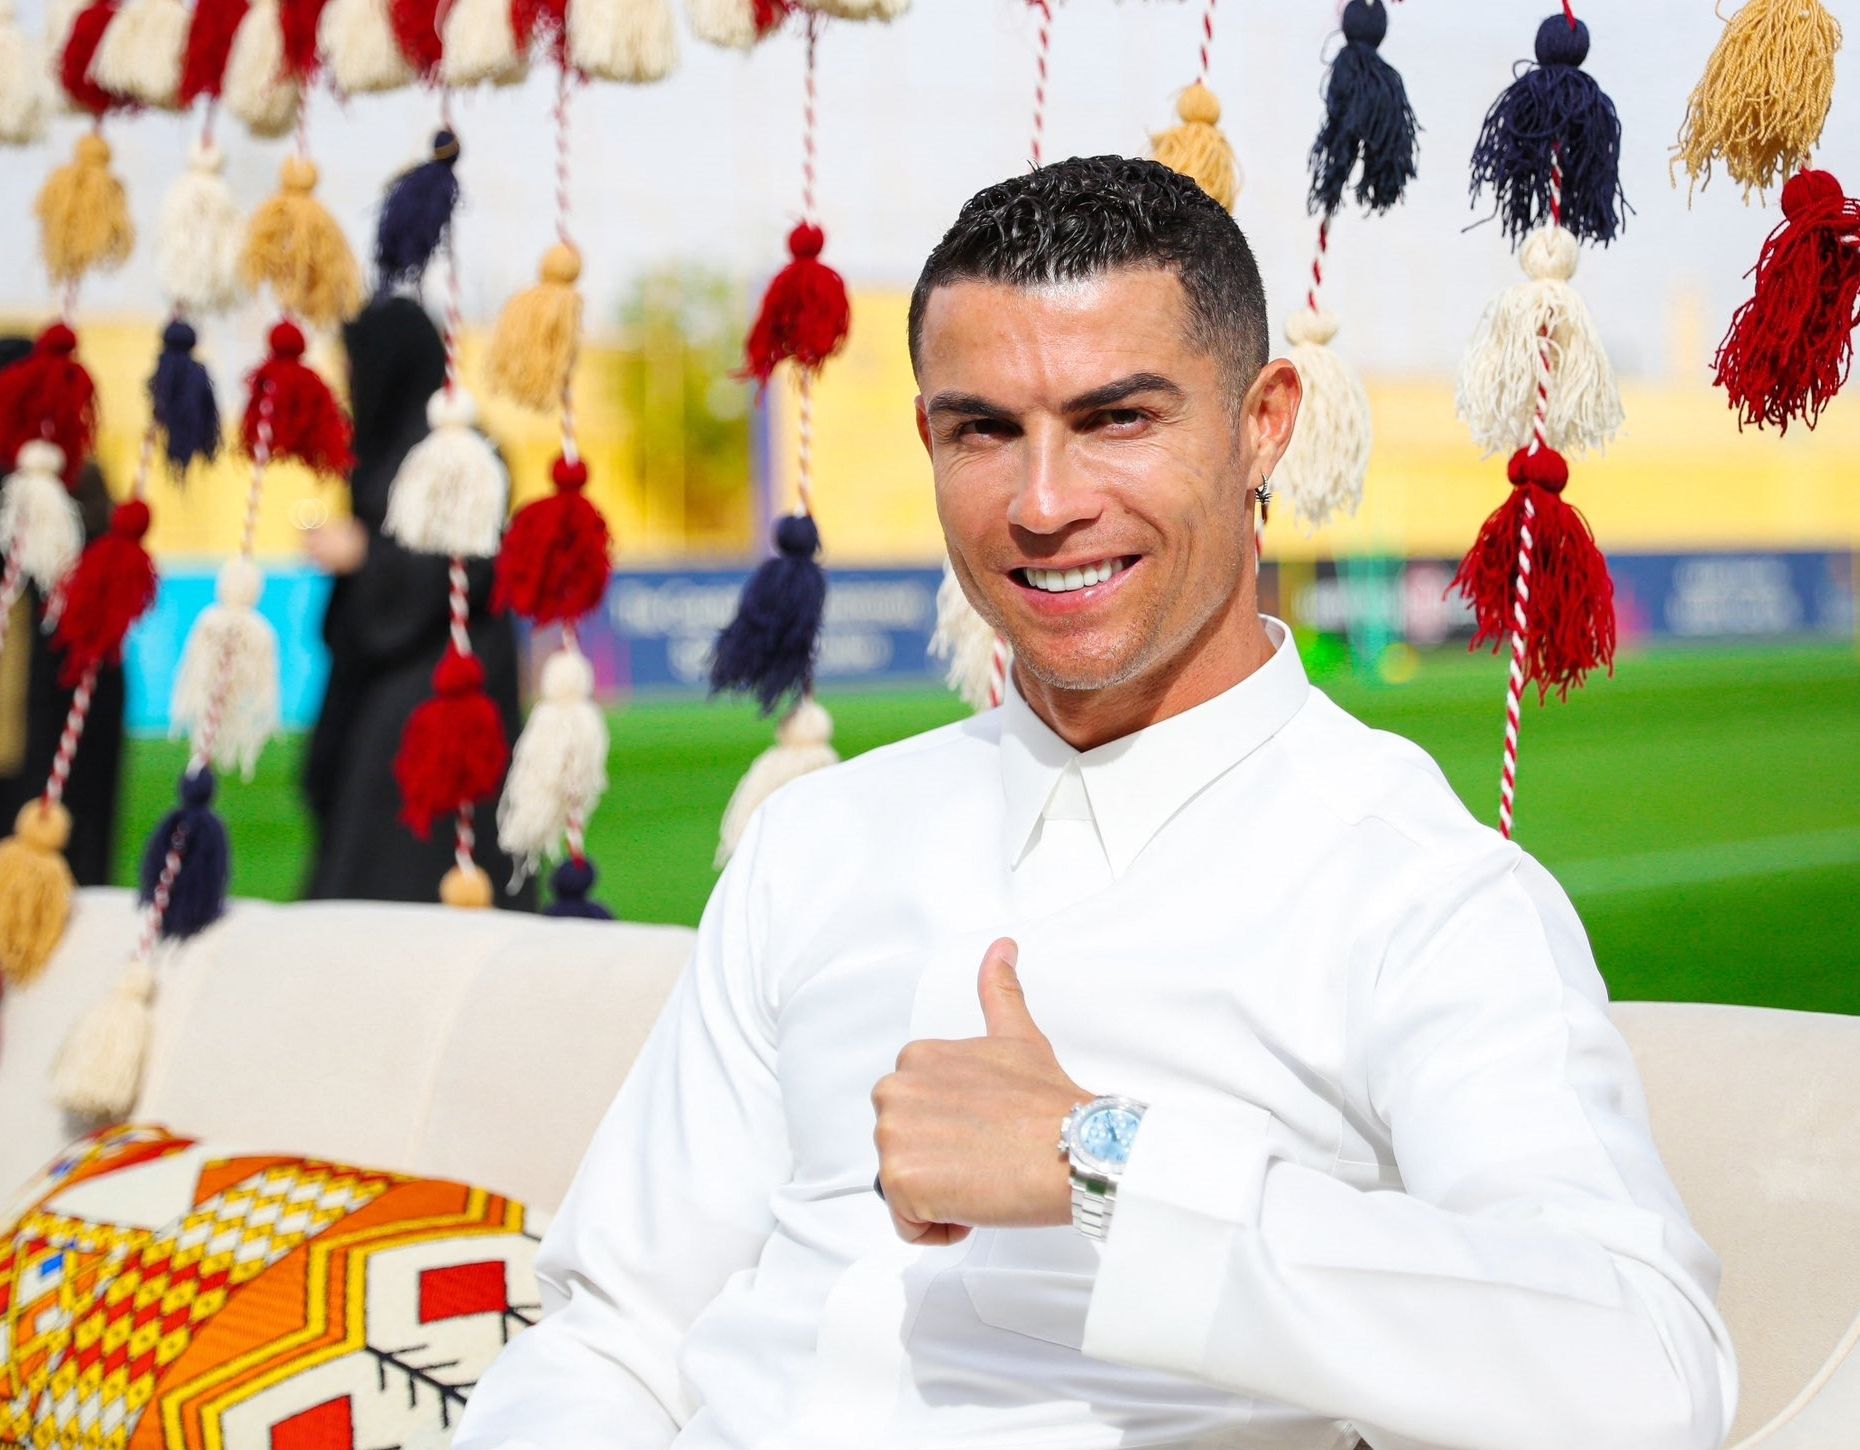 Plăcerea nevinovată a lui Cristiano Ronaldo. Cât costă cel mai scump ceas pe care îl are iubitul Georginei